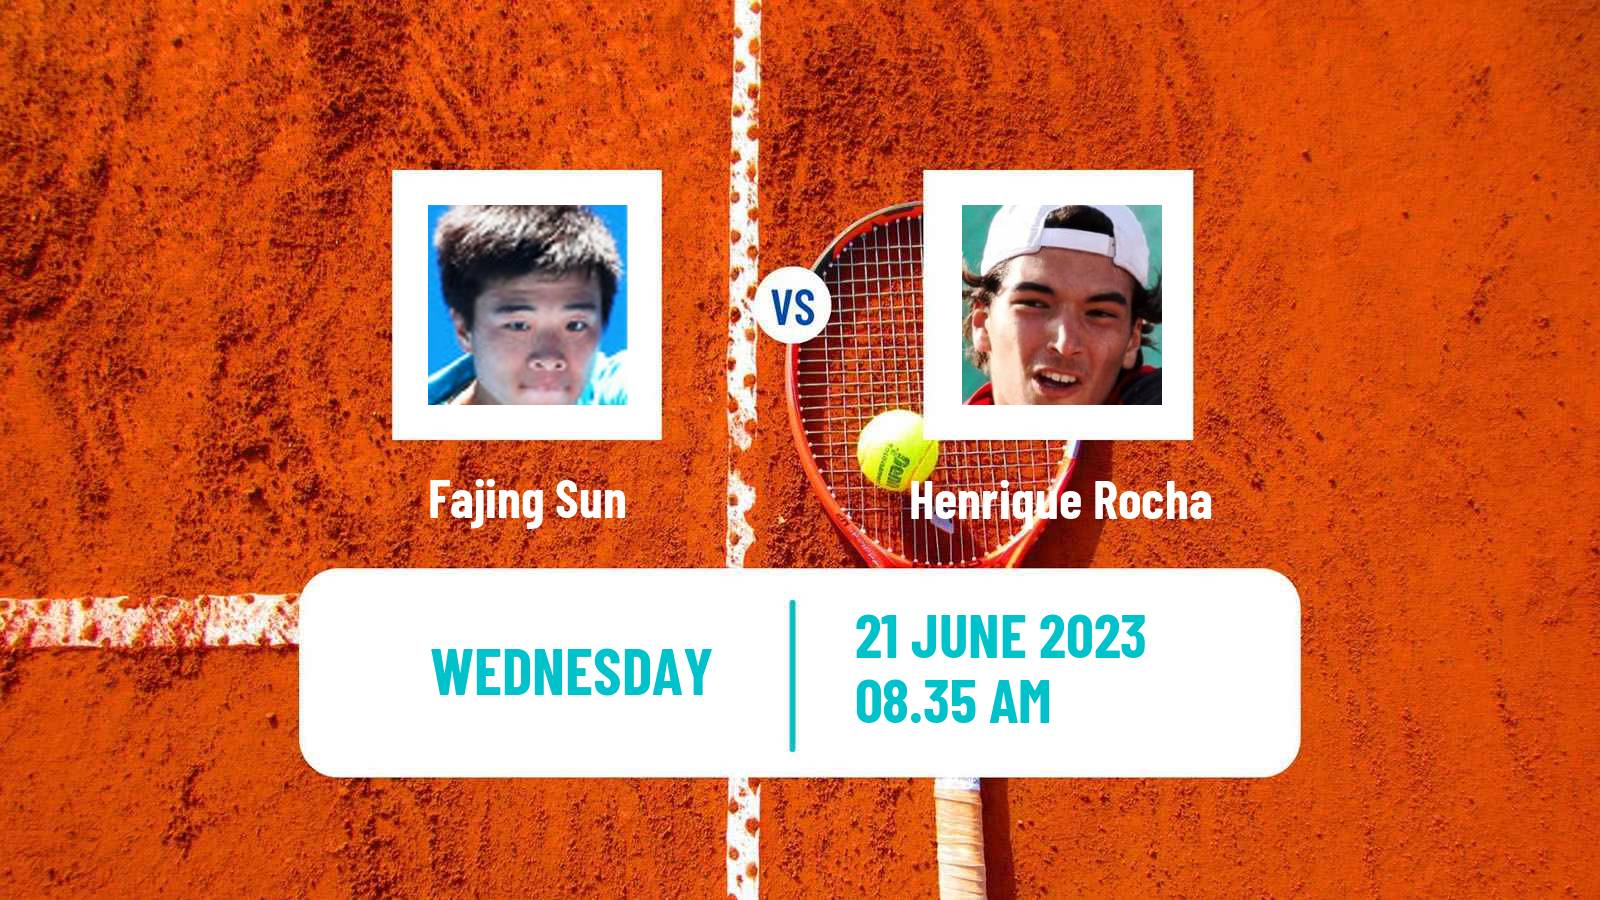 Tennis ITF M25 Mungia Men Fajing Sun - Henrique Rocha